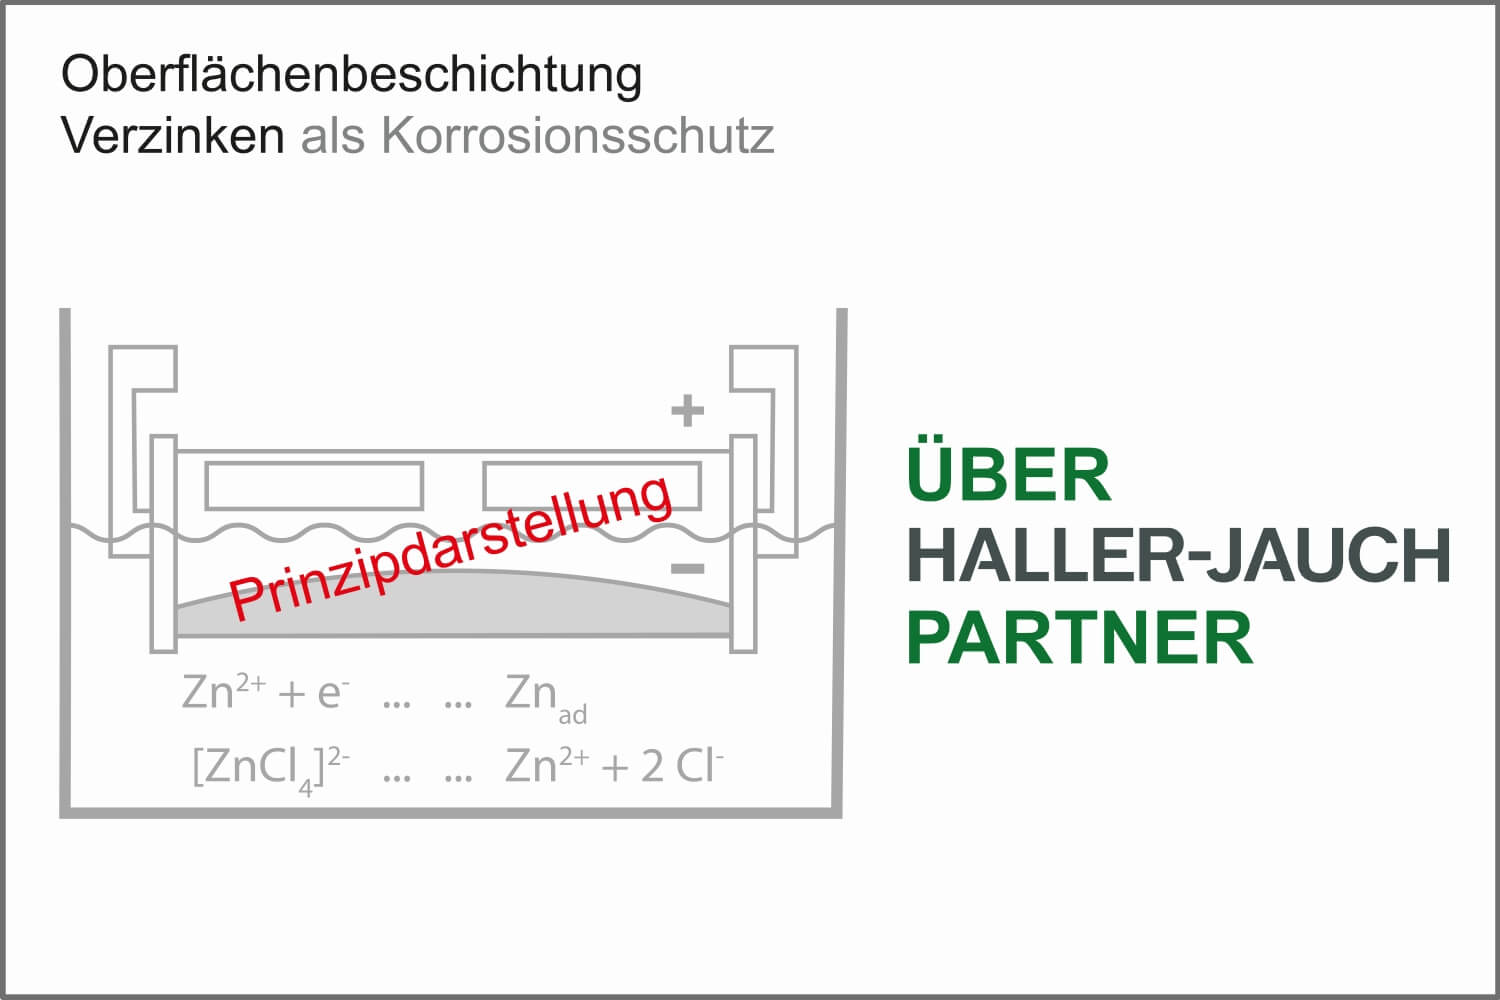 Automatendreherei – verzinken von Drehteilen – Oberflächenbeschichtung über Haller-Jauch-Partner